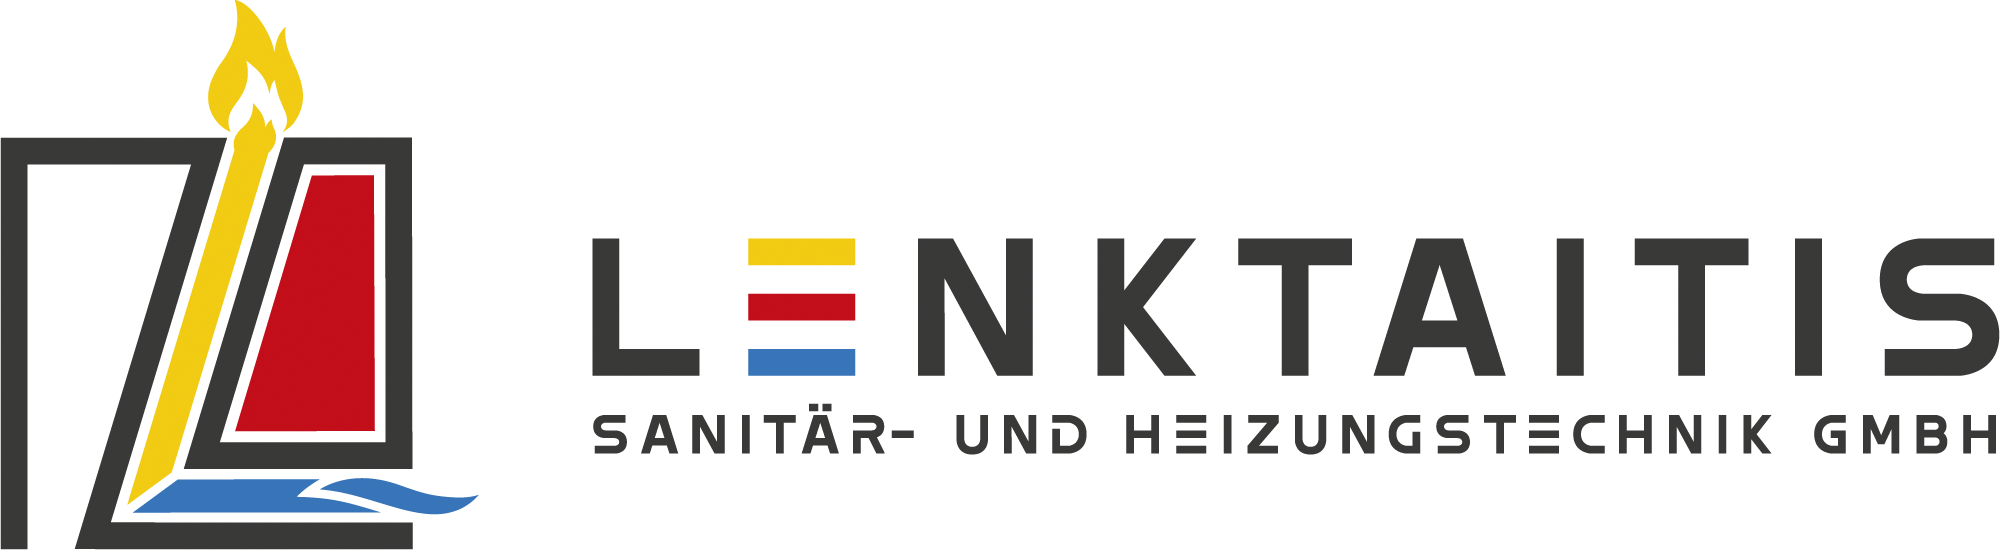 Bild: Lenktaitis Sanitär- und Heizungstechnik GmbH - Logo